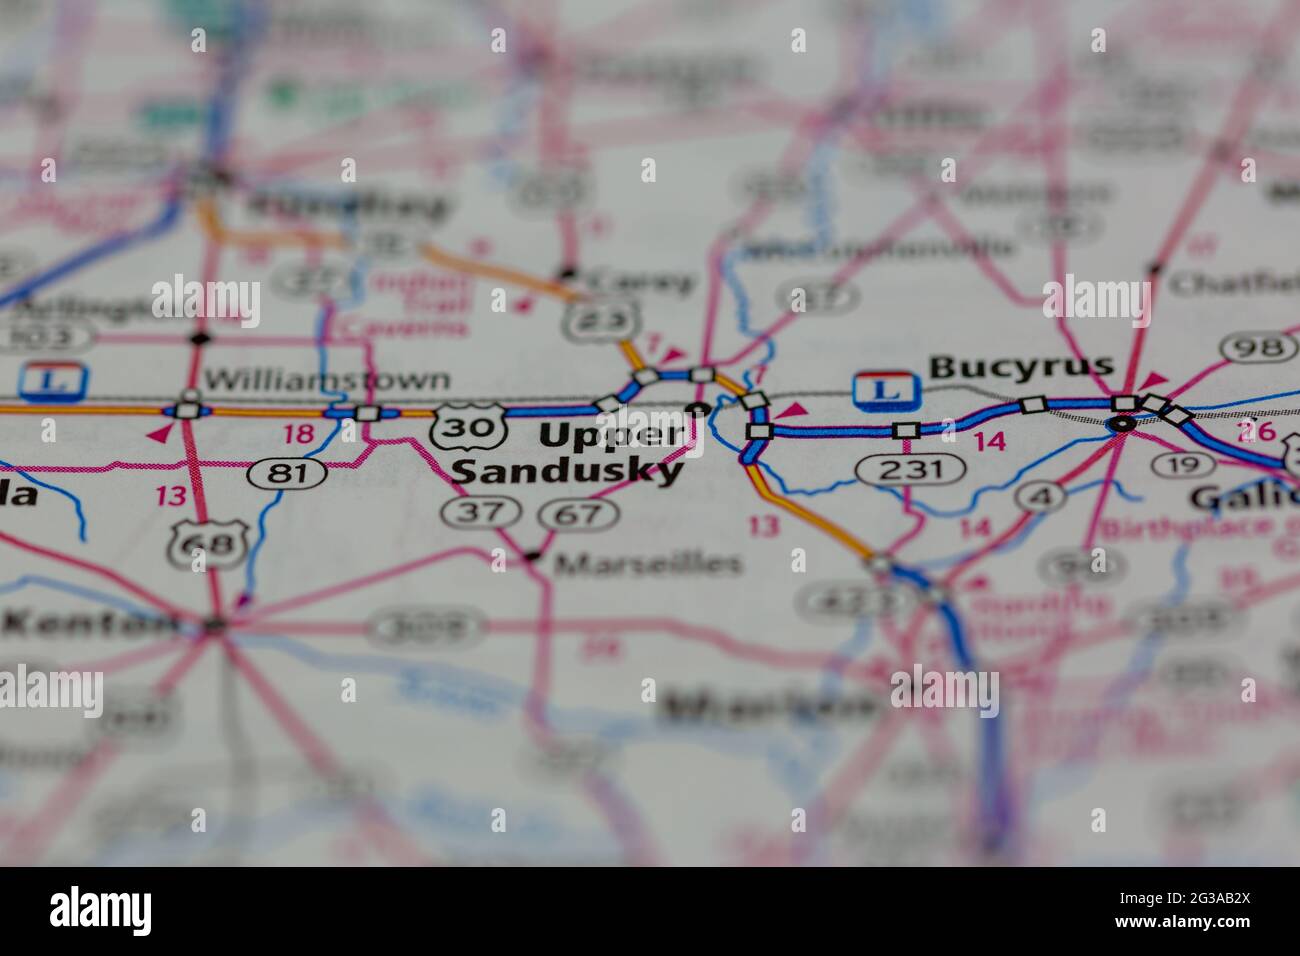 Upper Sandusky Ohio USA montré sur une carte de géographie ou une carte routière Banque D'Images